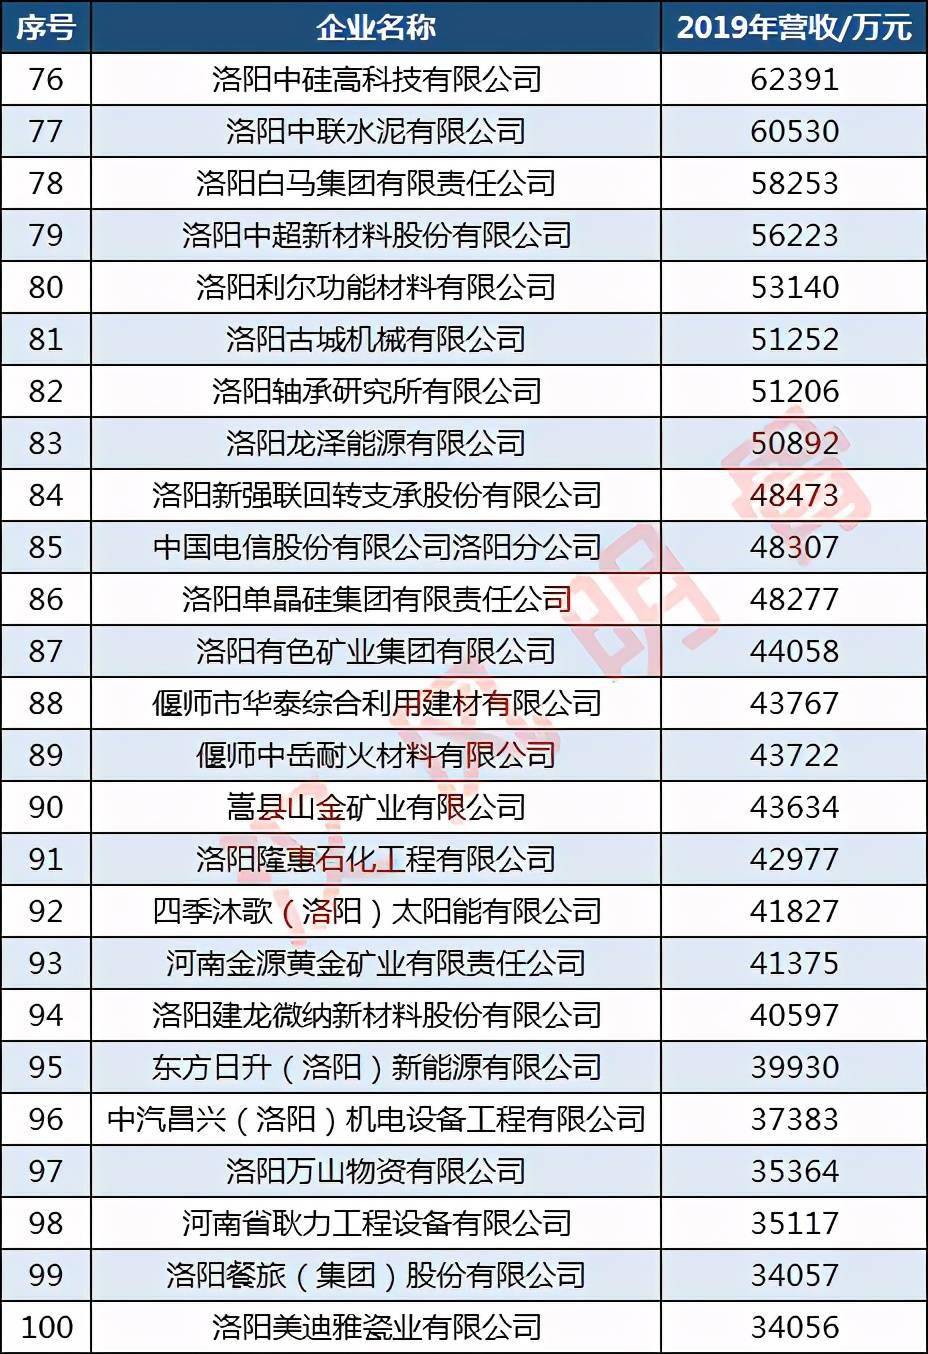 洛阳餐旅(集团)股份有限公司排名第99,洛阳美迪雅瓷业有限公司排名第